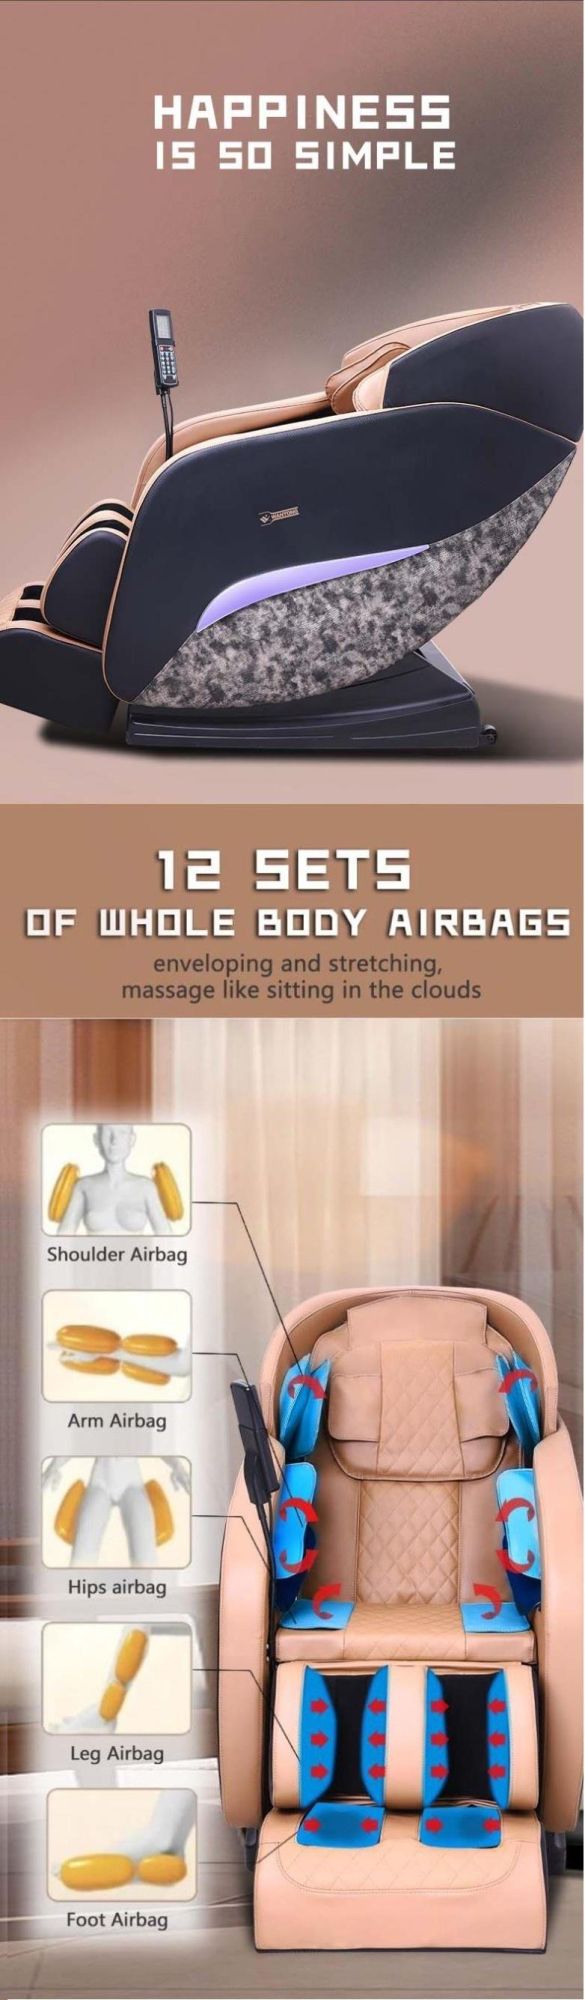 New Model Full Body 8d Zero Gravity Massage Chair for Sale Roller Massaing Chair